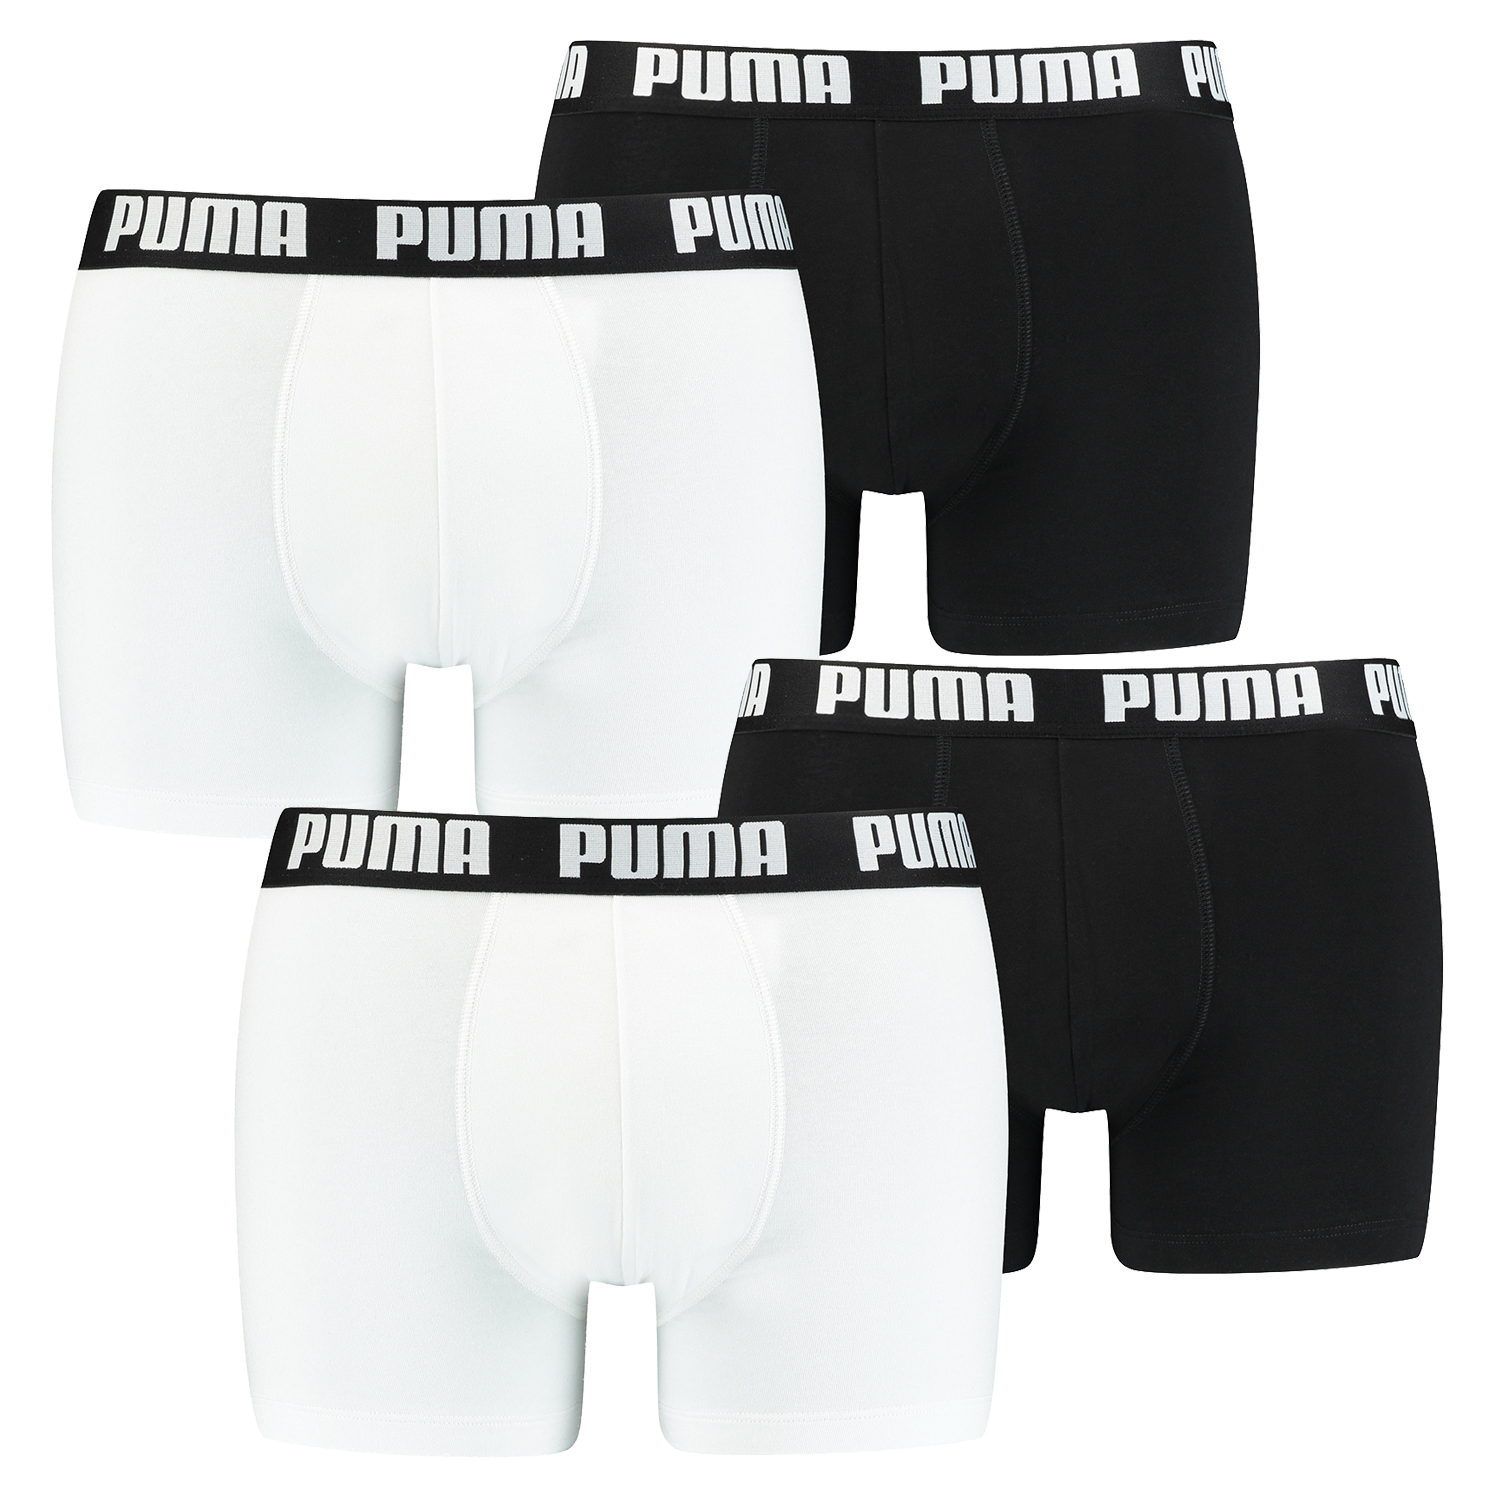 4 er Pack Puma Boxer Boxershorts Men Herren Unterhose Pant Unterwäsche